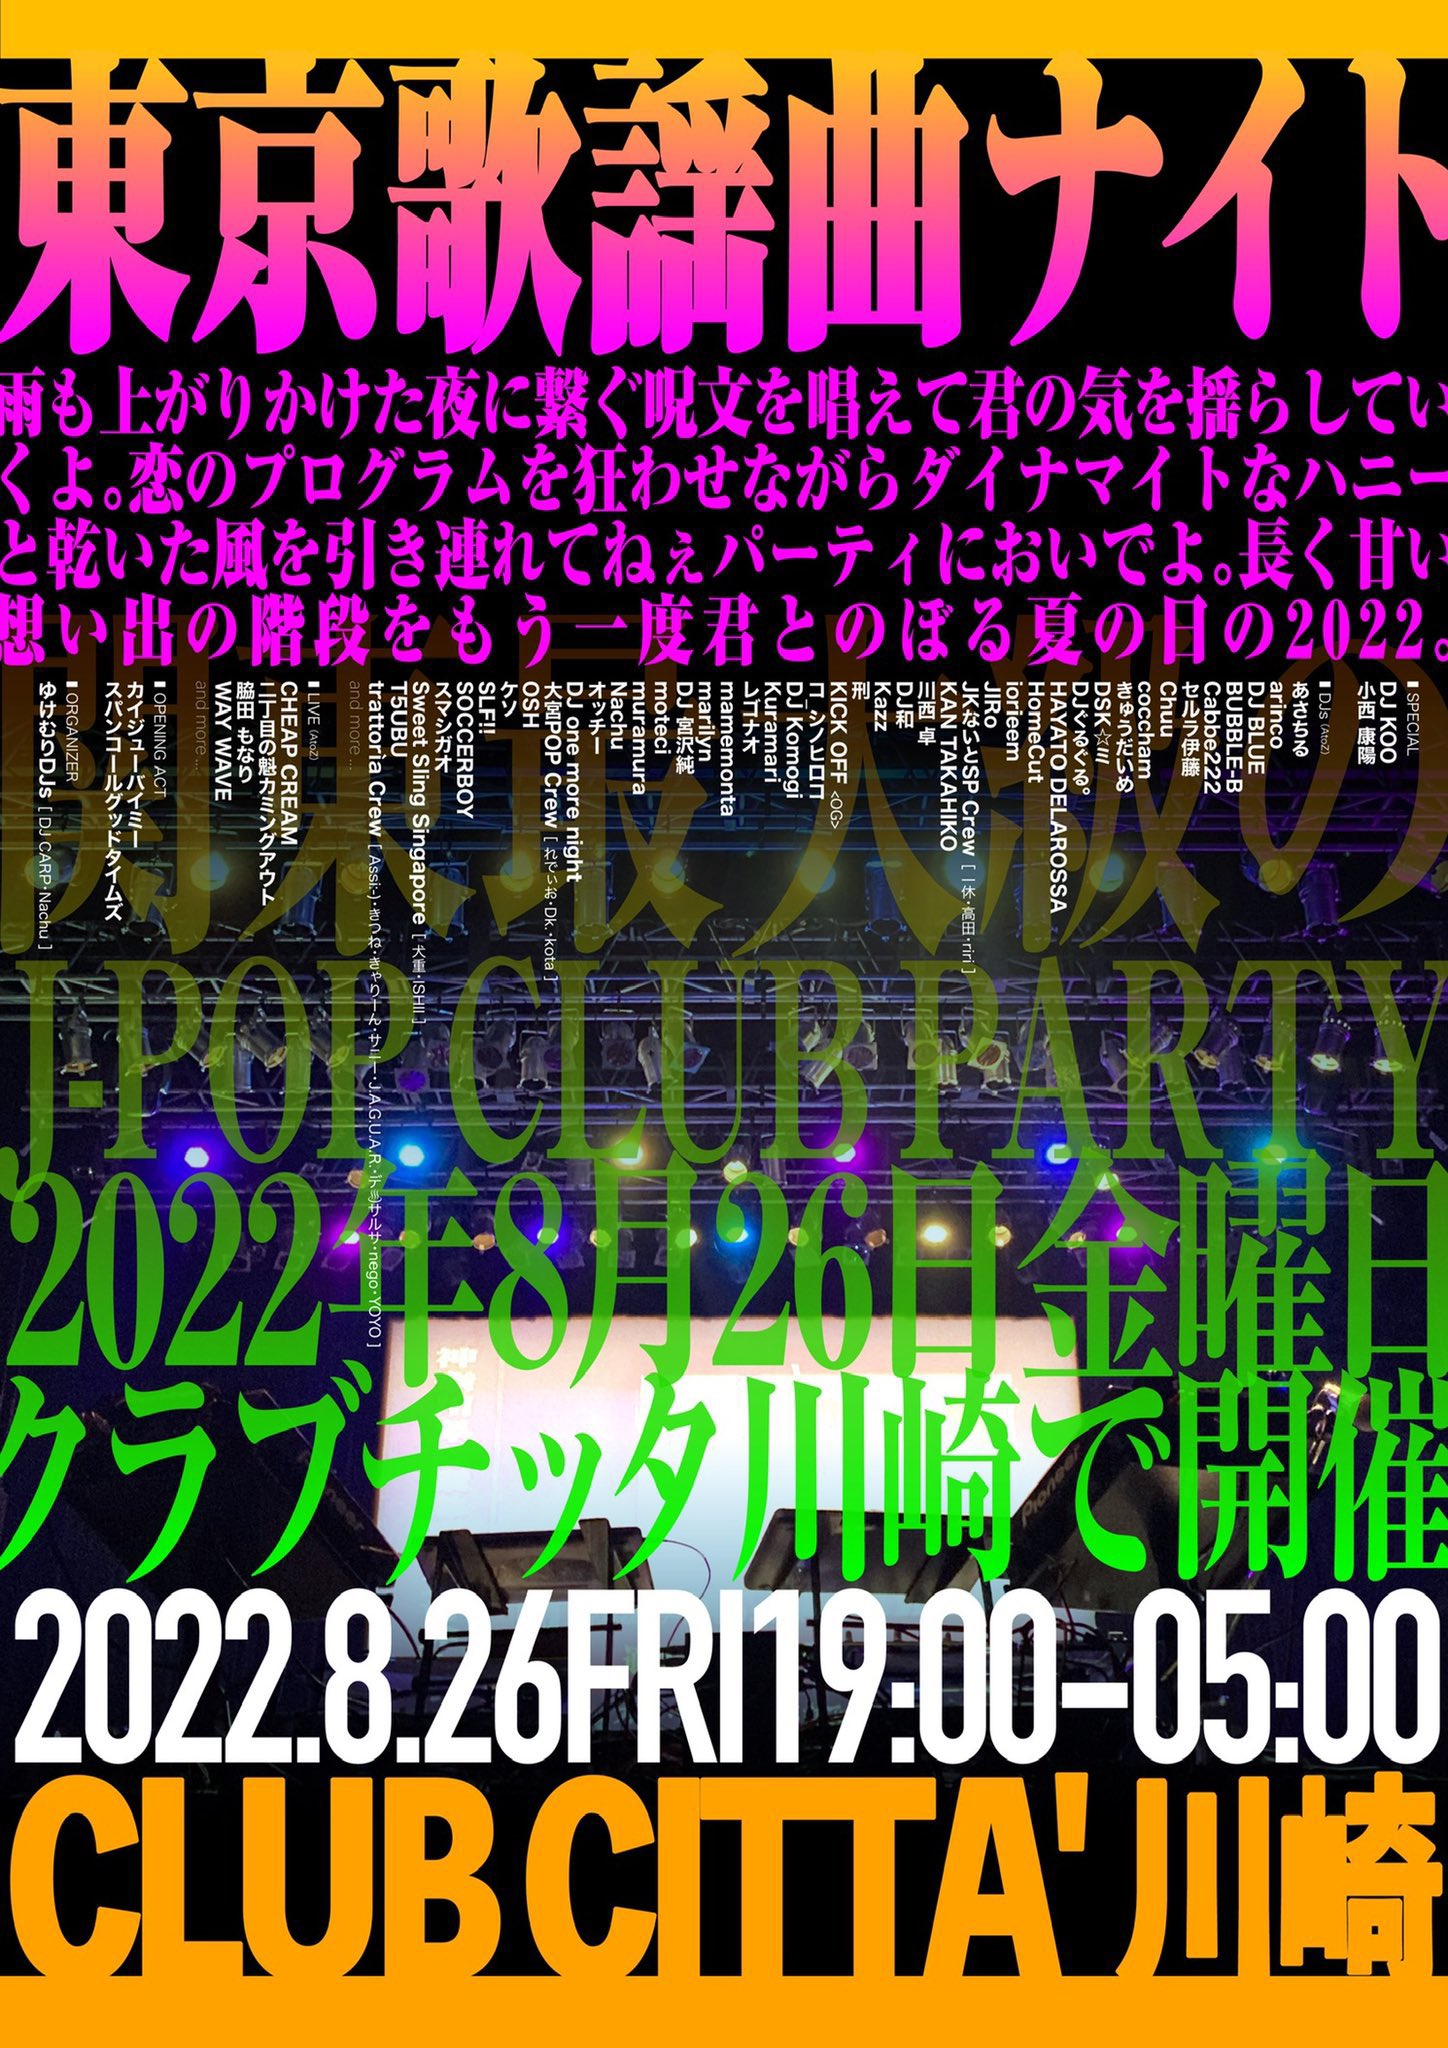 「東京歌謡曲ナイト2022」 CLUB CITTA 2022年8月26日 (金)（19:00-5:00開催予定）